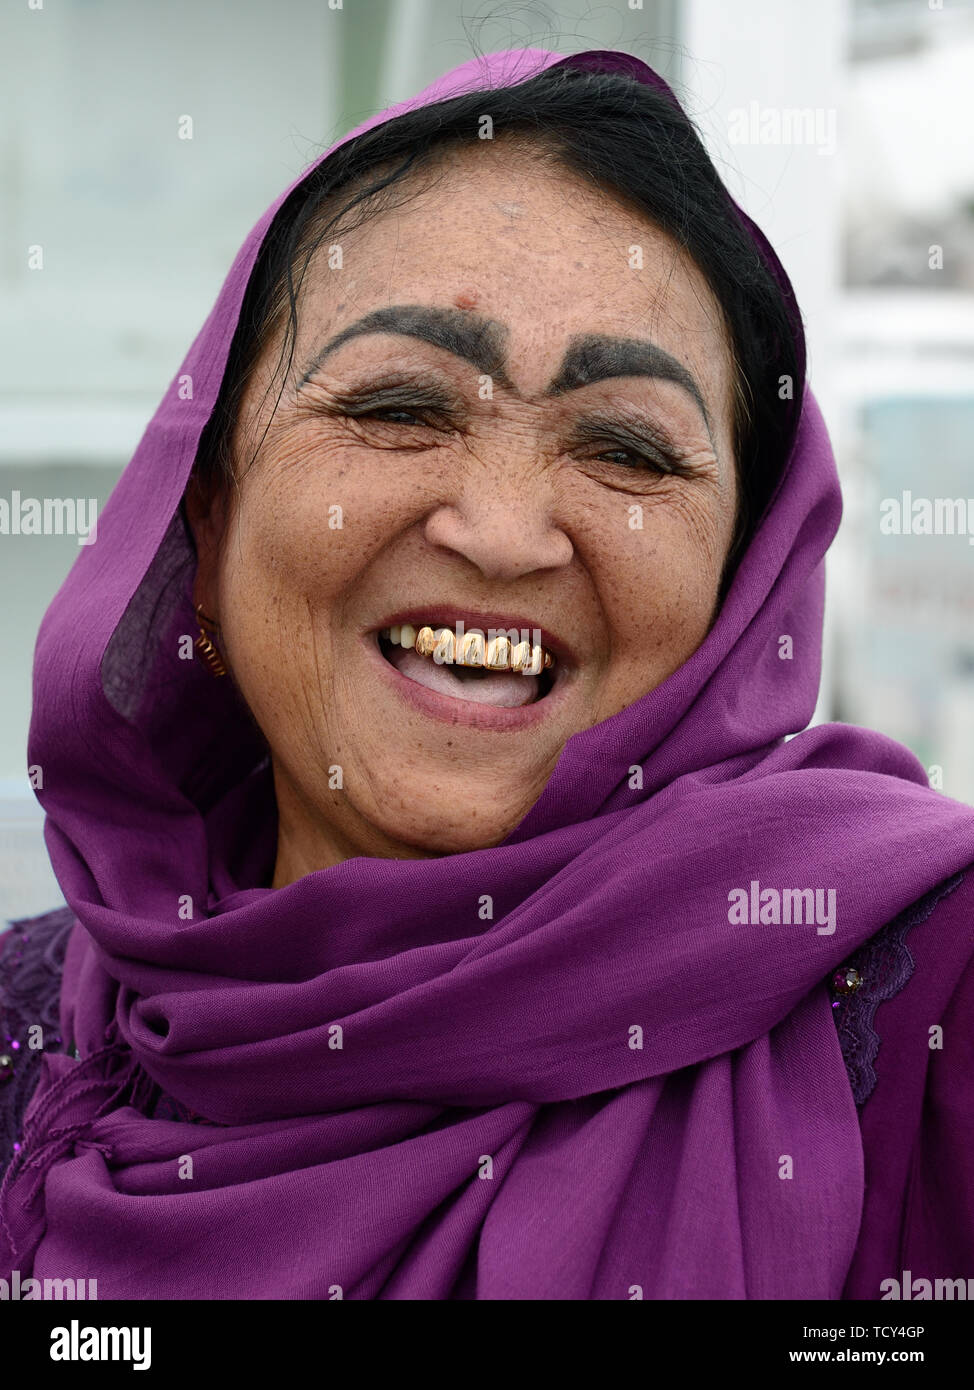 Marguilan, vallée de Ferghana, en Ouzbékistan - 2 juin 2019 : Portrait de la femme ouzbèke rire, habillés dans l'écharpe, avec l'incroyable composition de l'e Banque D'Images